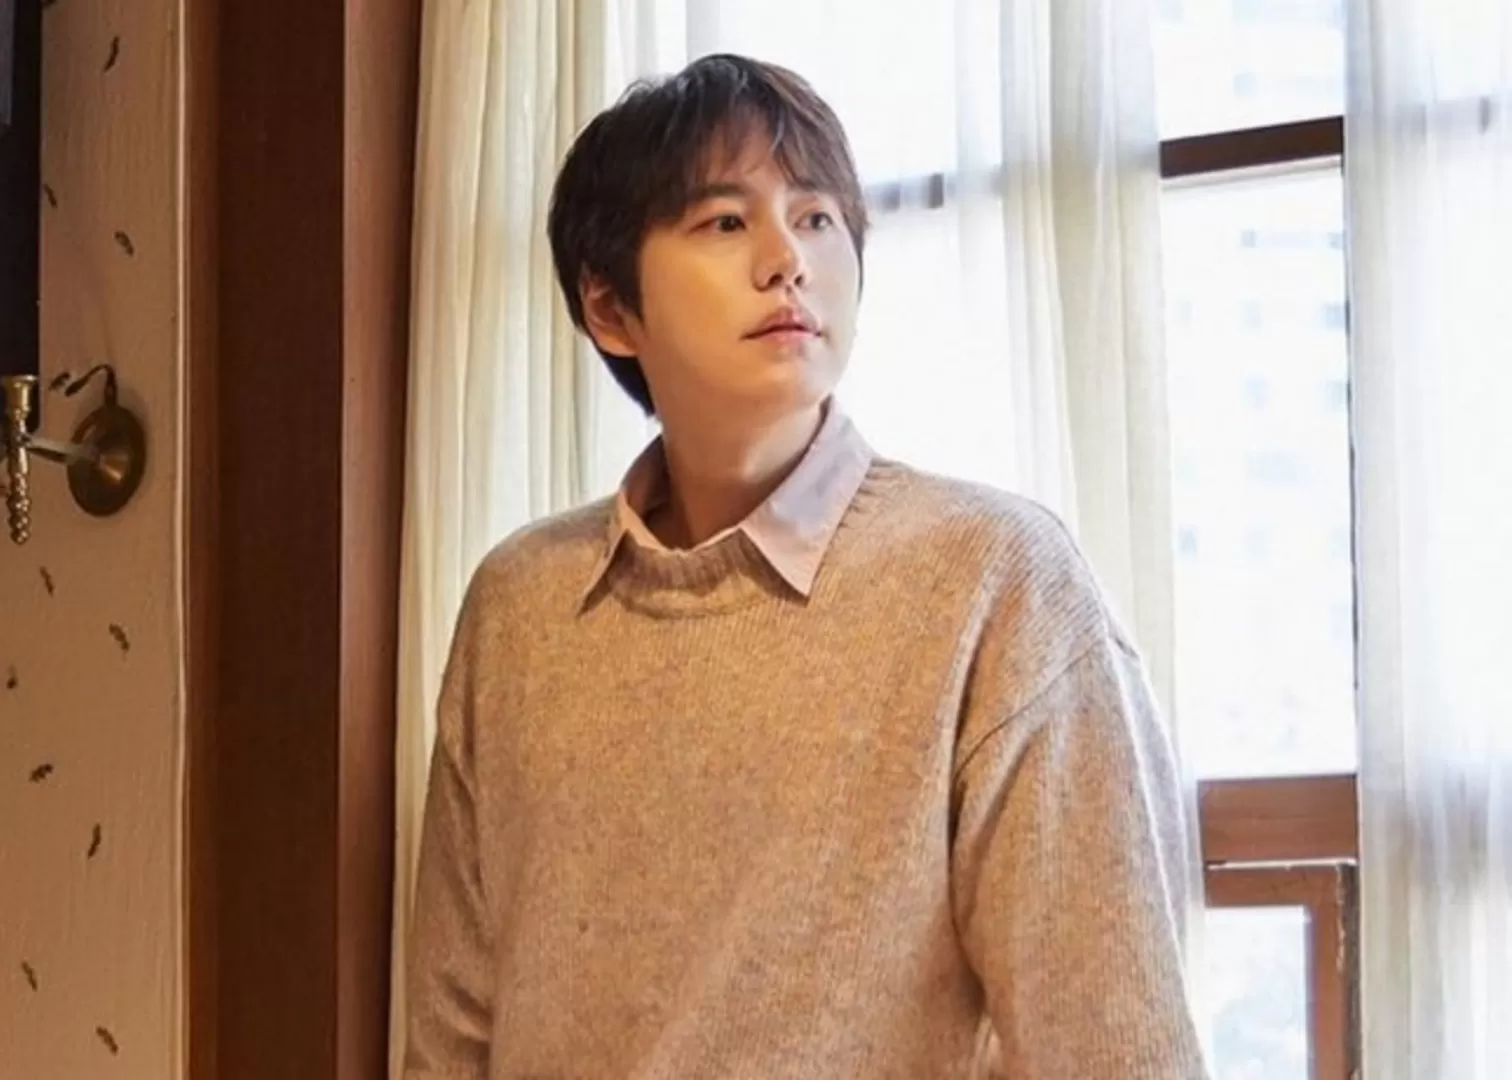 Lirik Lagu Restart - Kyuhyun Super Junior Beserta Terjemahan Bahasa Indonesia